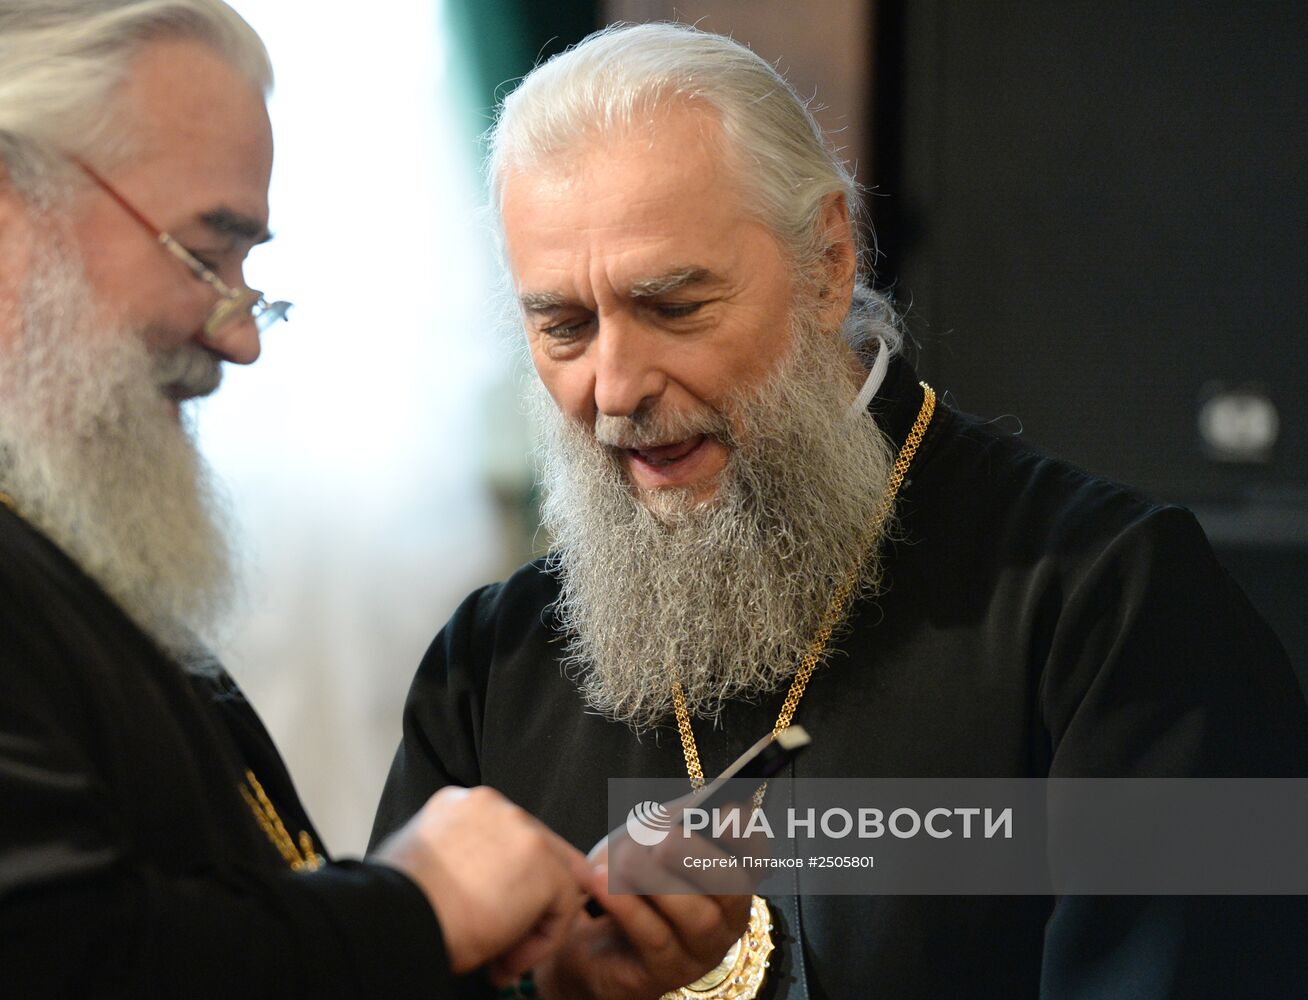 Открытие собрания игумений в Троице-Сергиевой лавре в рамках празднования 700-летия Сергия Радонежского